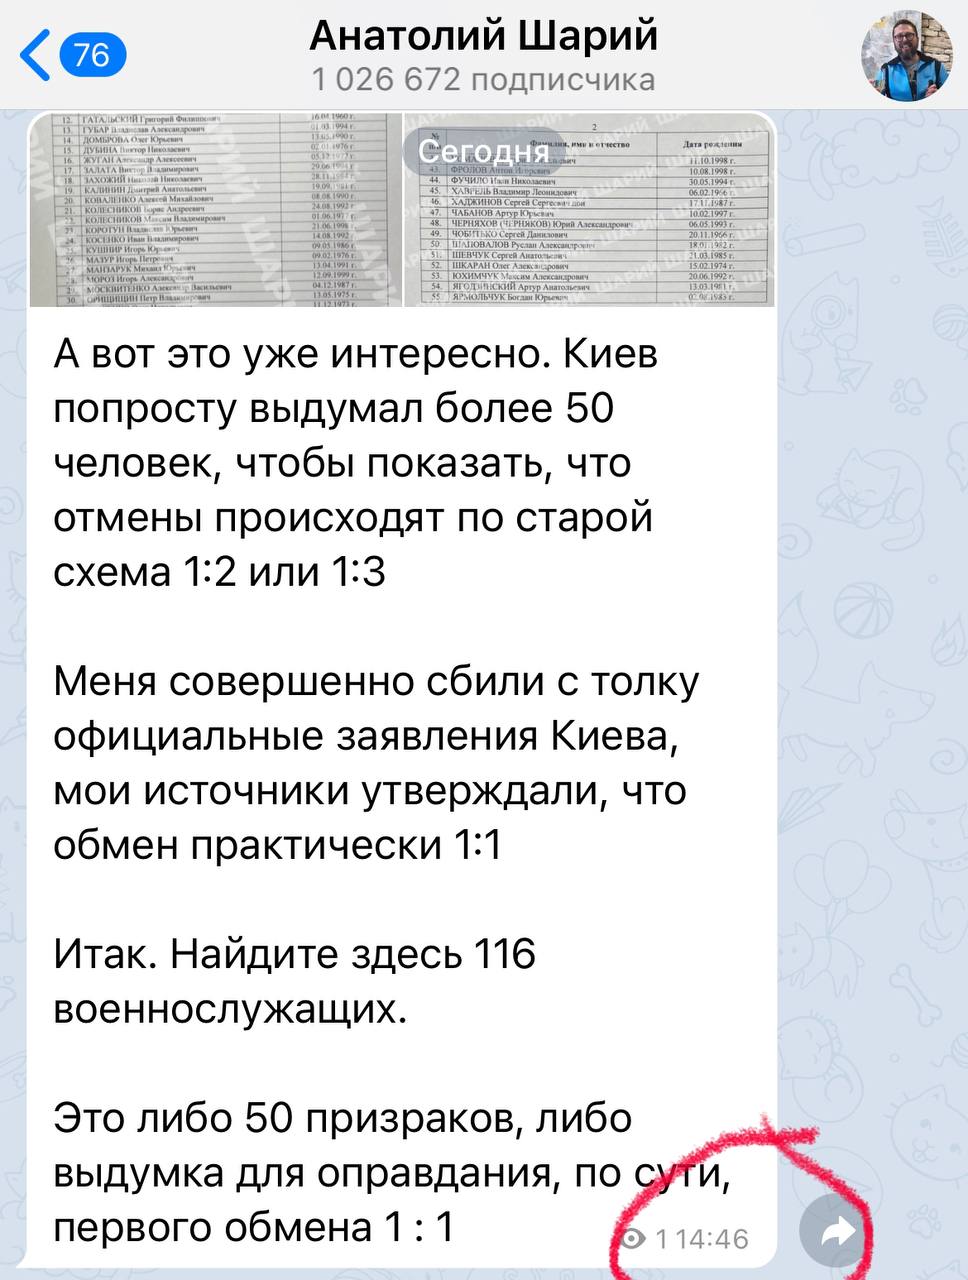 Труха телеграмм украина на русском языке смотреть онлайн бесплатно фото 68